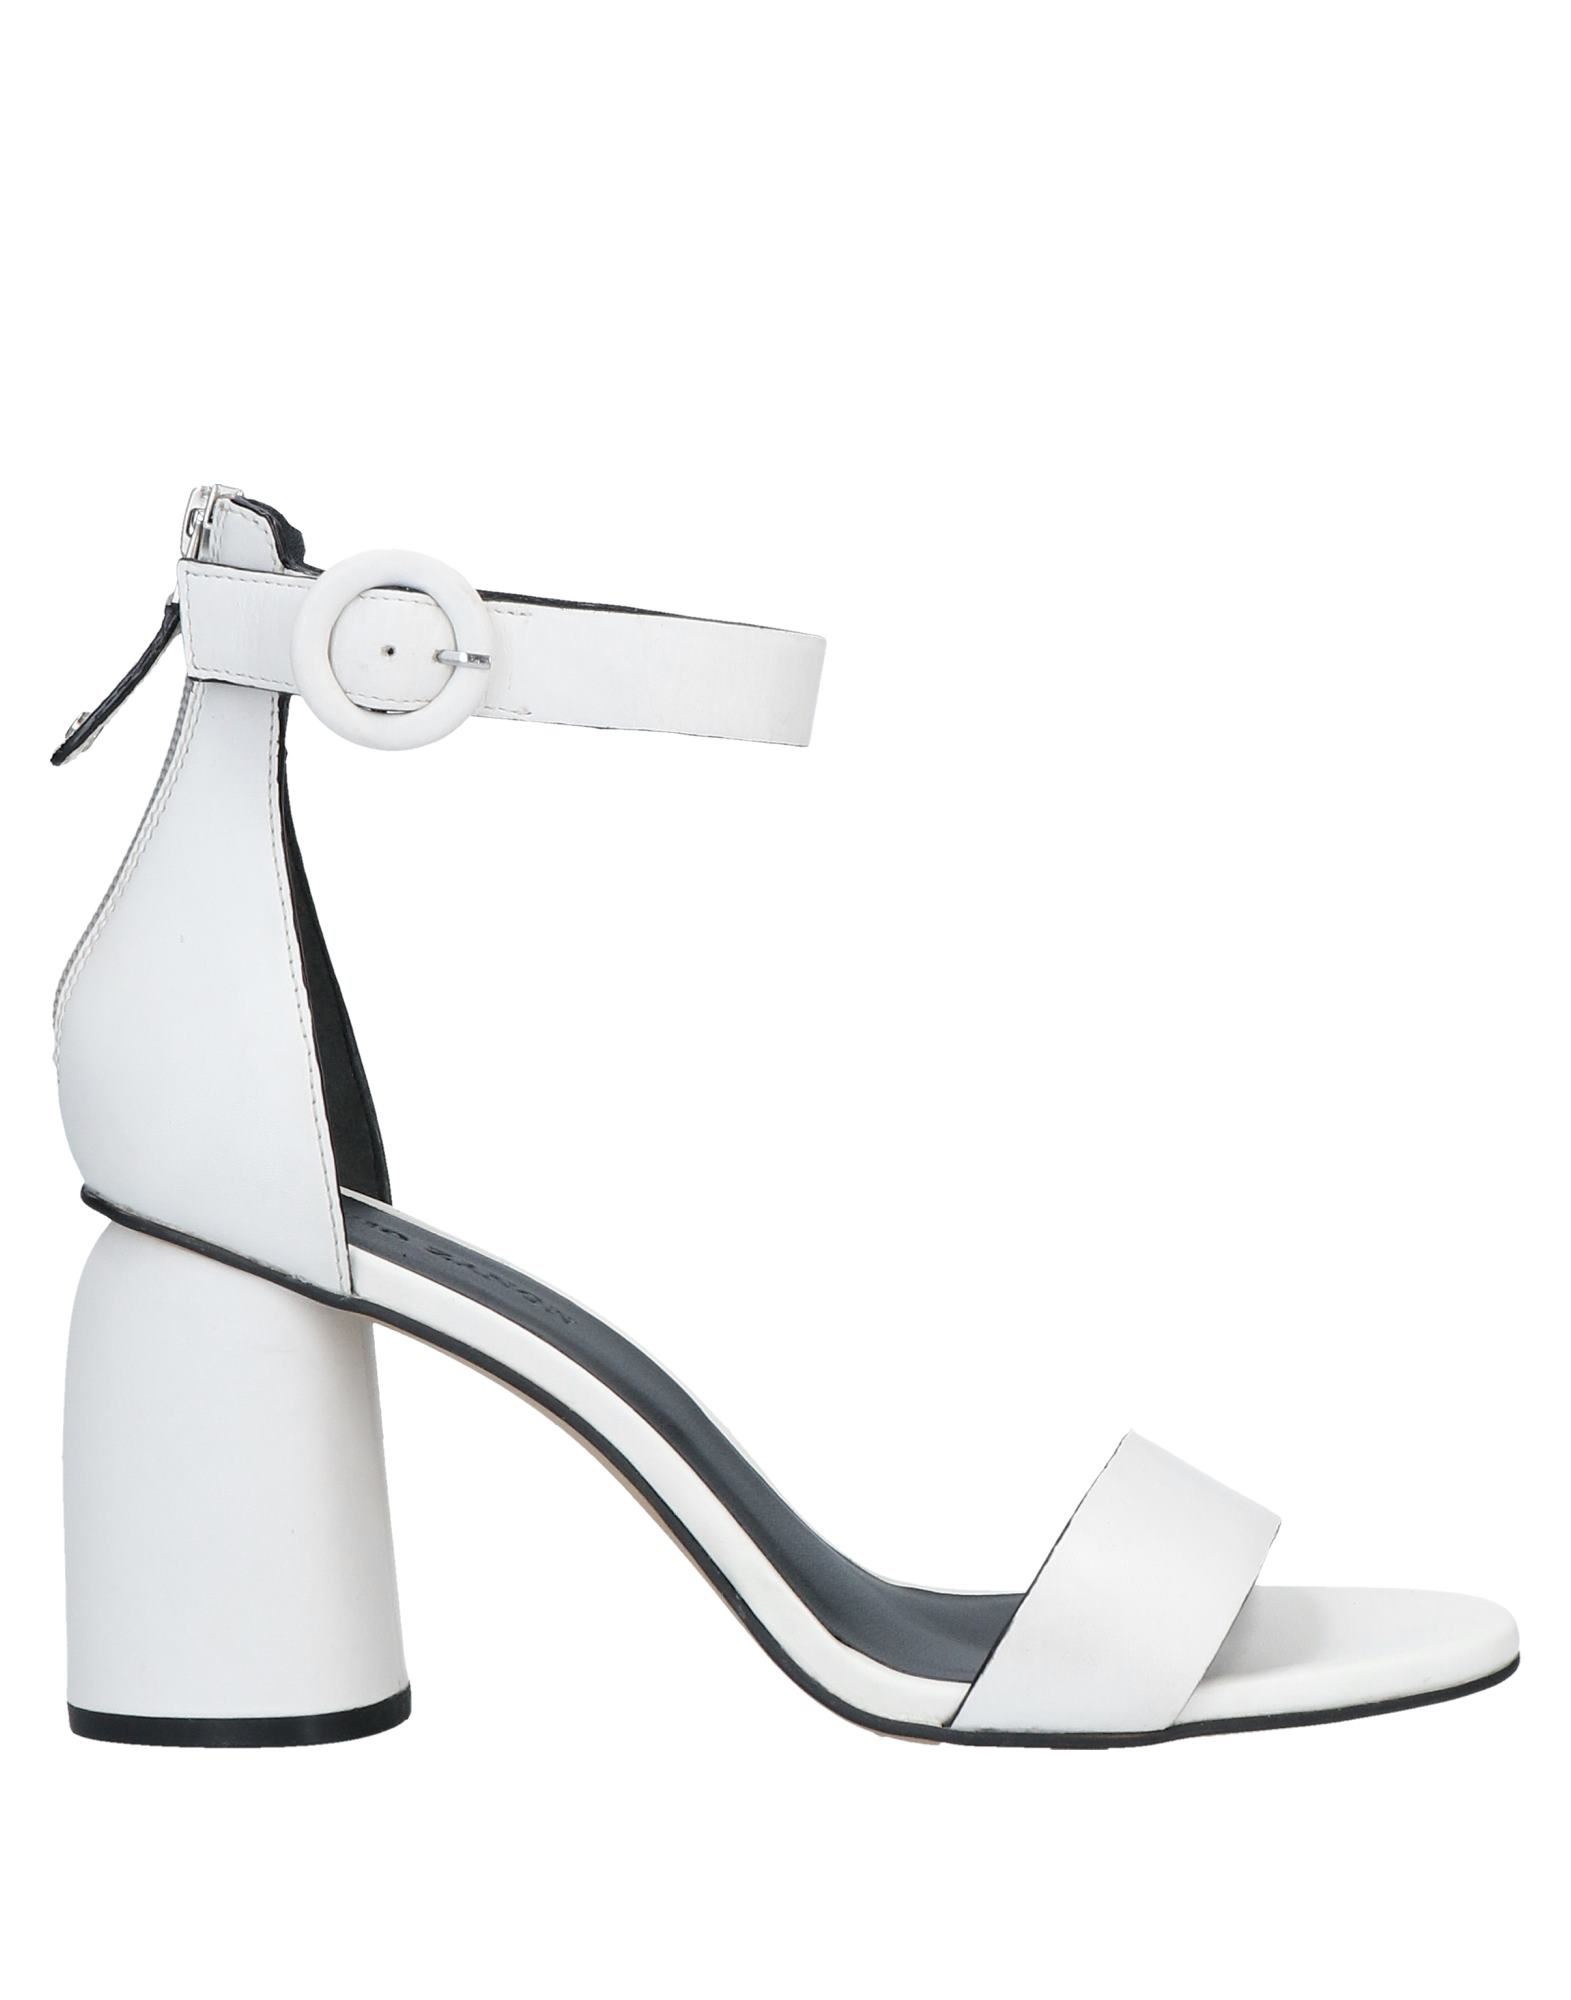 Elvio Zanon Sandals In White